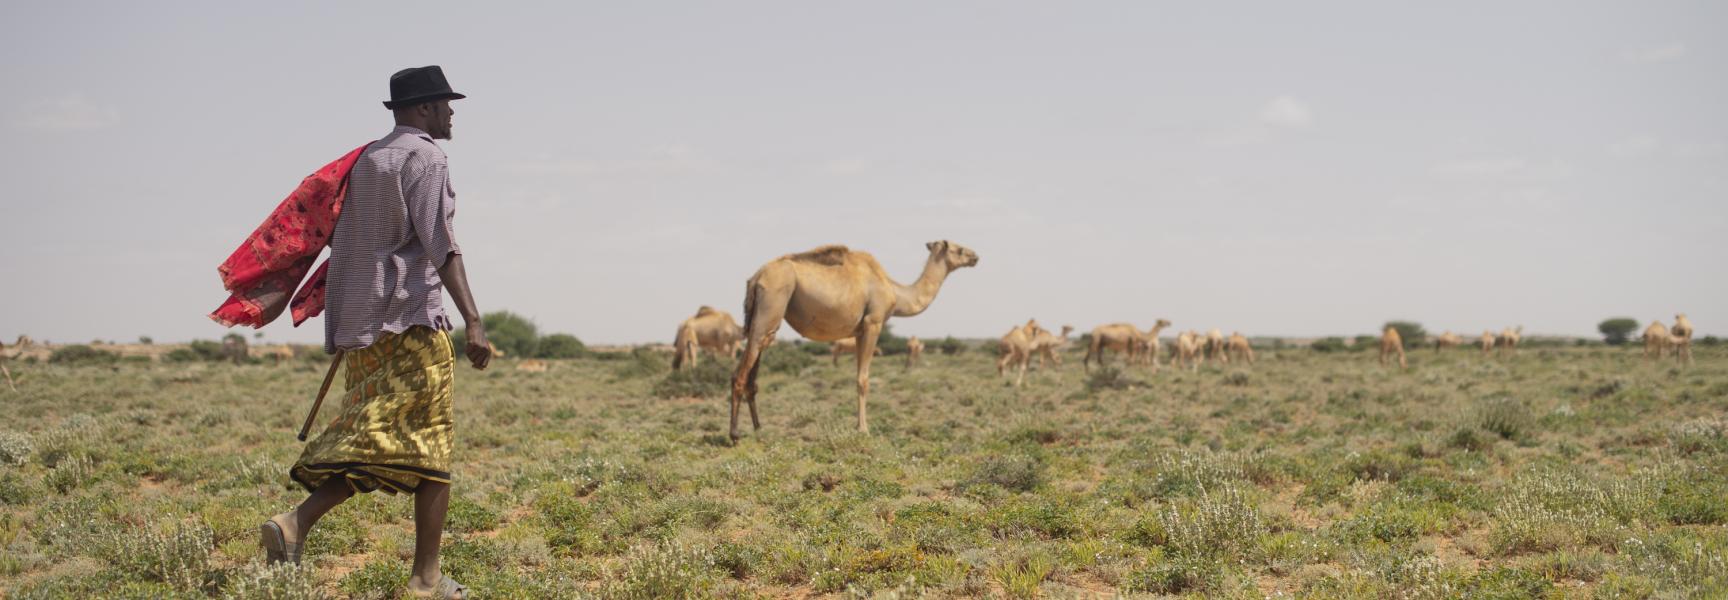 Hombre con manada de camellos en Somalia